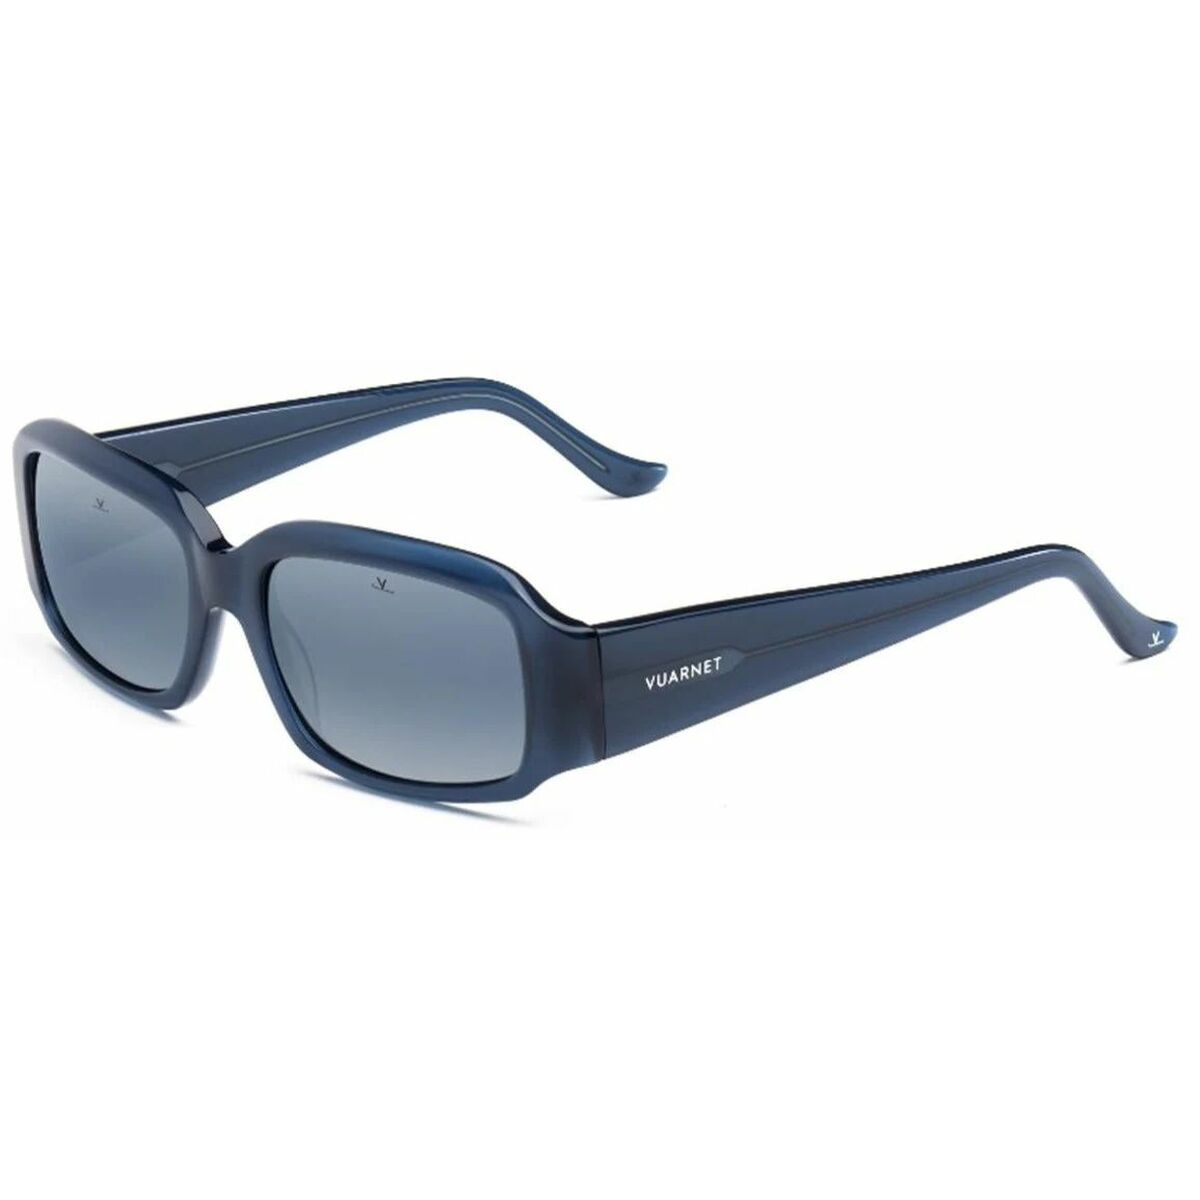 Kaufe Damensonnenbrille Vuarnet VL220100050636 Ø 55 mm bei AWK Flagship um € 121.00